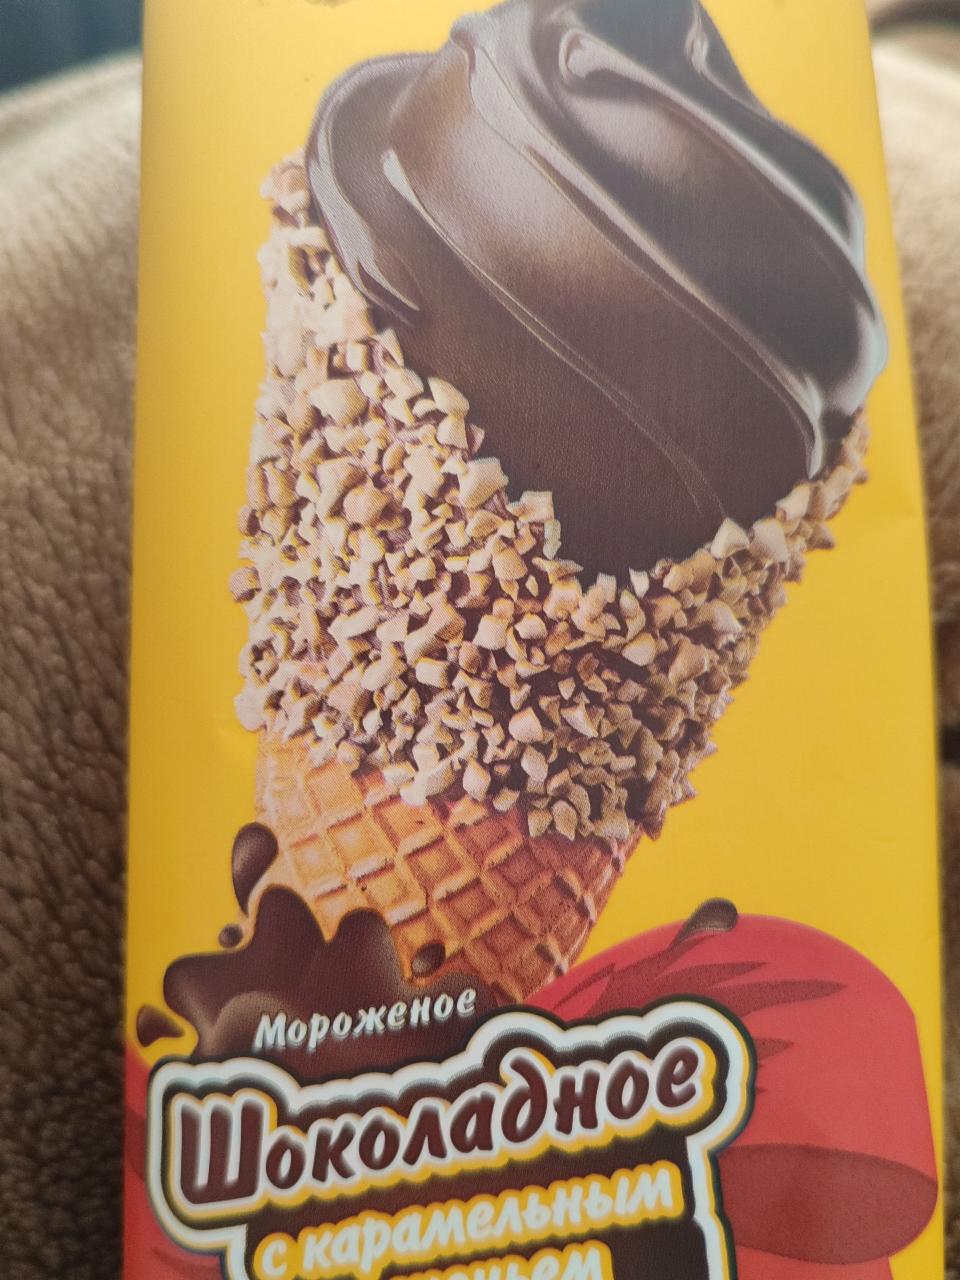 Фото - Шоколадное с карамельным печеньем Крымское мороженое